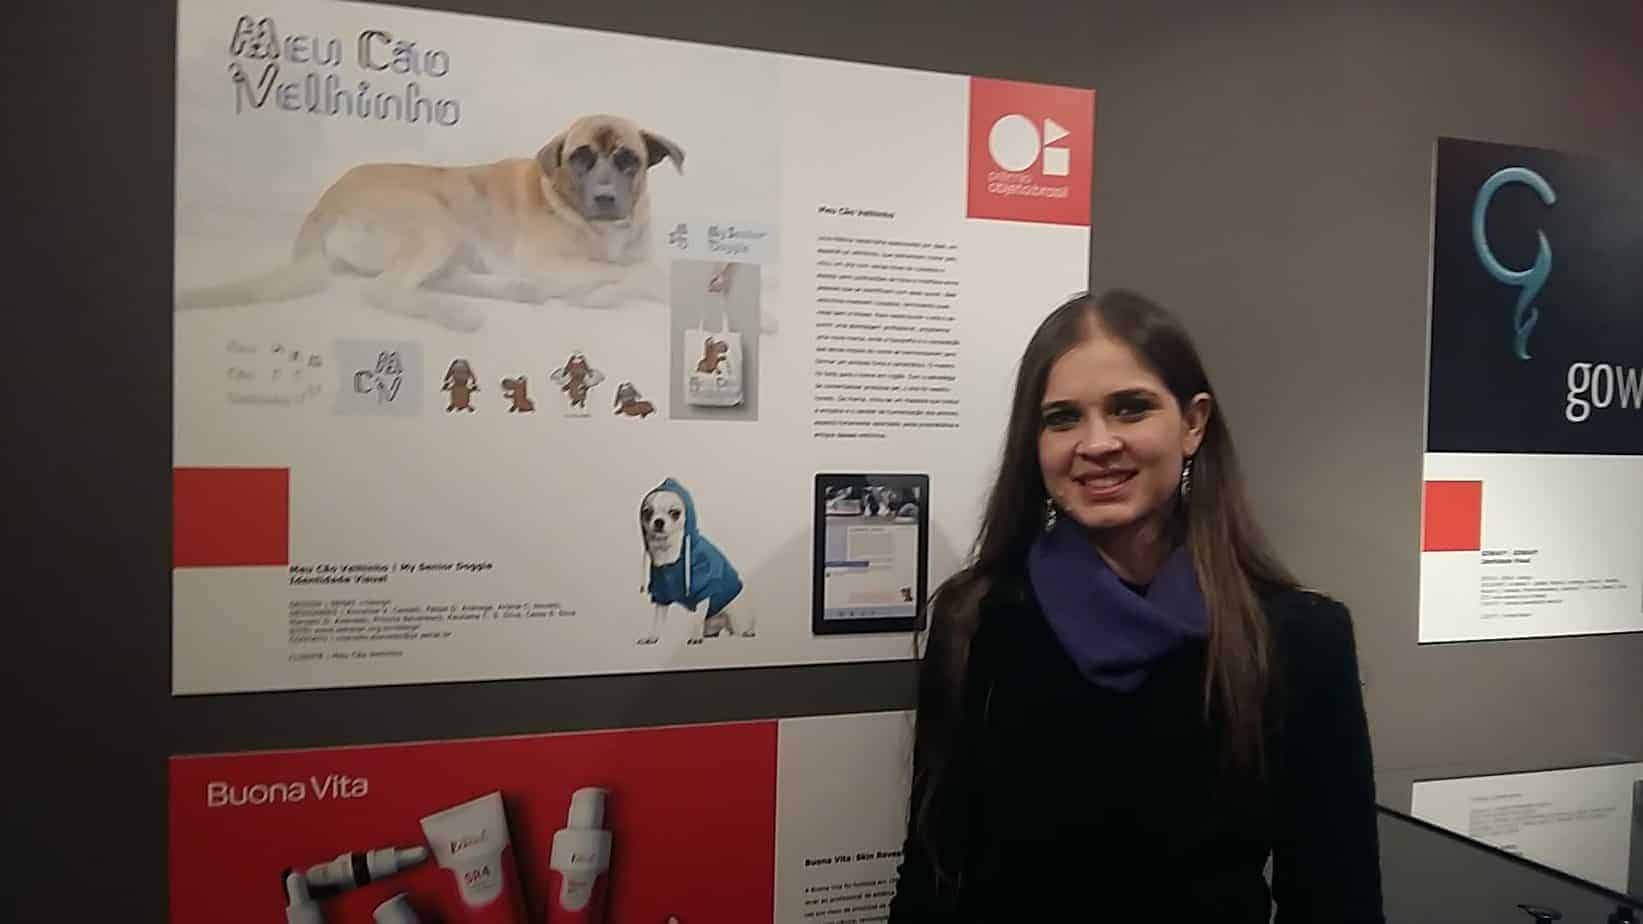 Novo design do Meu Cão Velhinho, realizado em parceria com o Senai/PR, participa da mostra "Prêmio Objeto: Brasil", no Museu Oscar Niemeyer em Curitiba